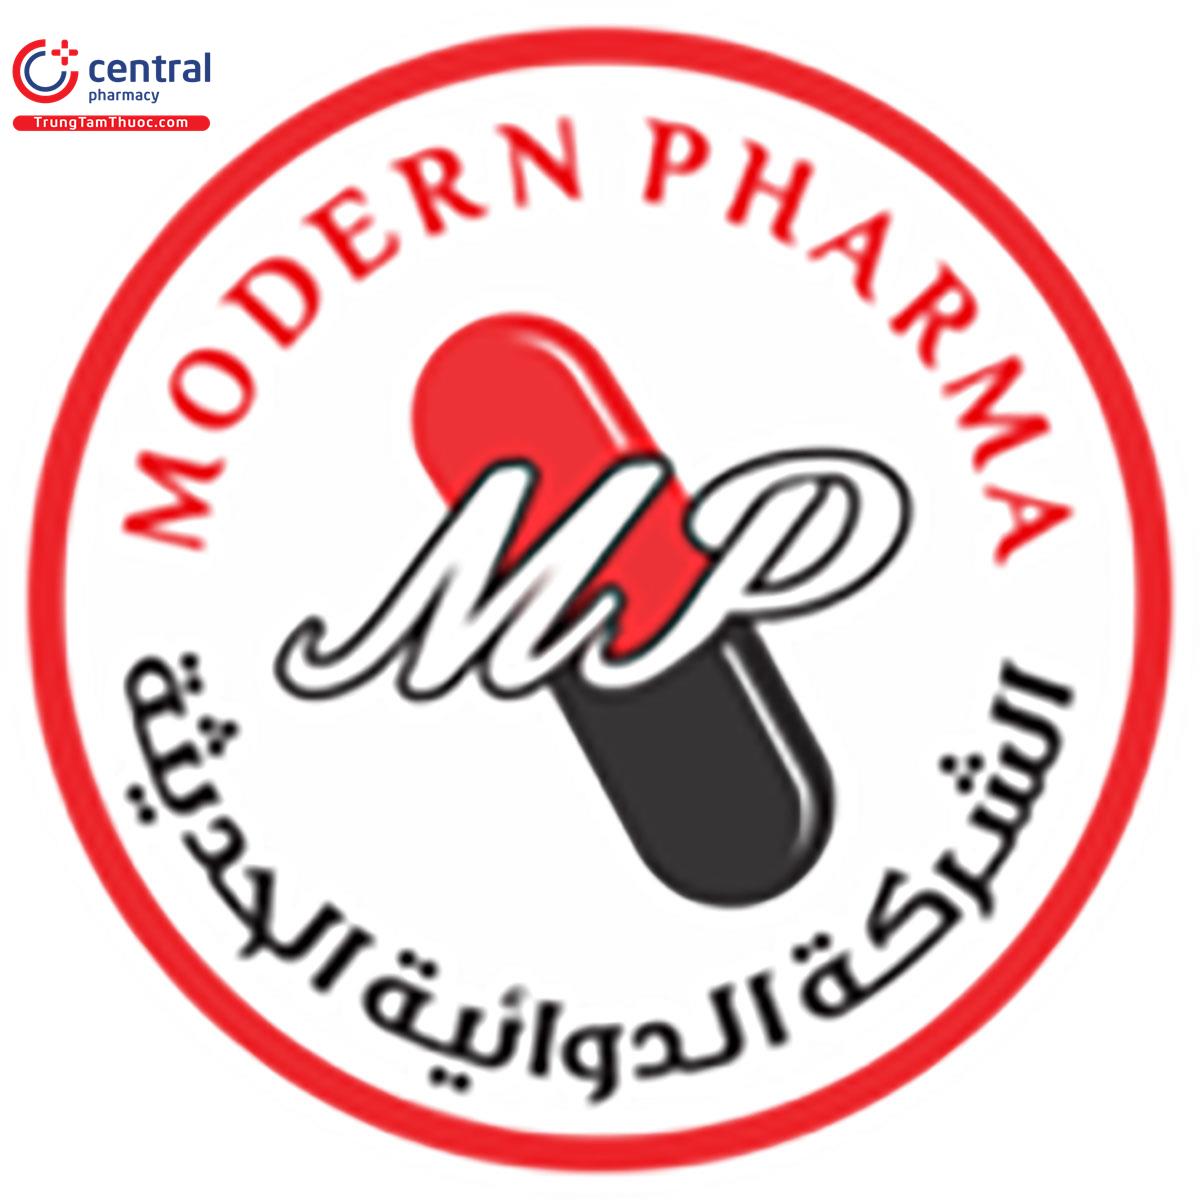 Modern Pharma